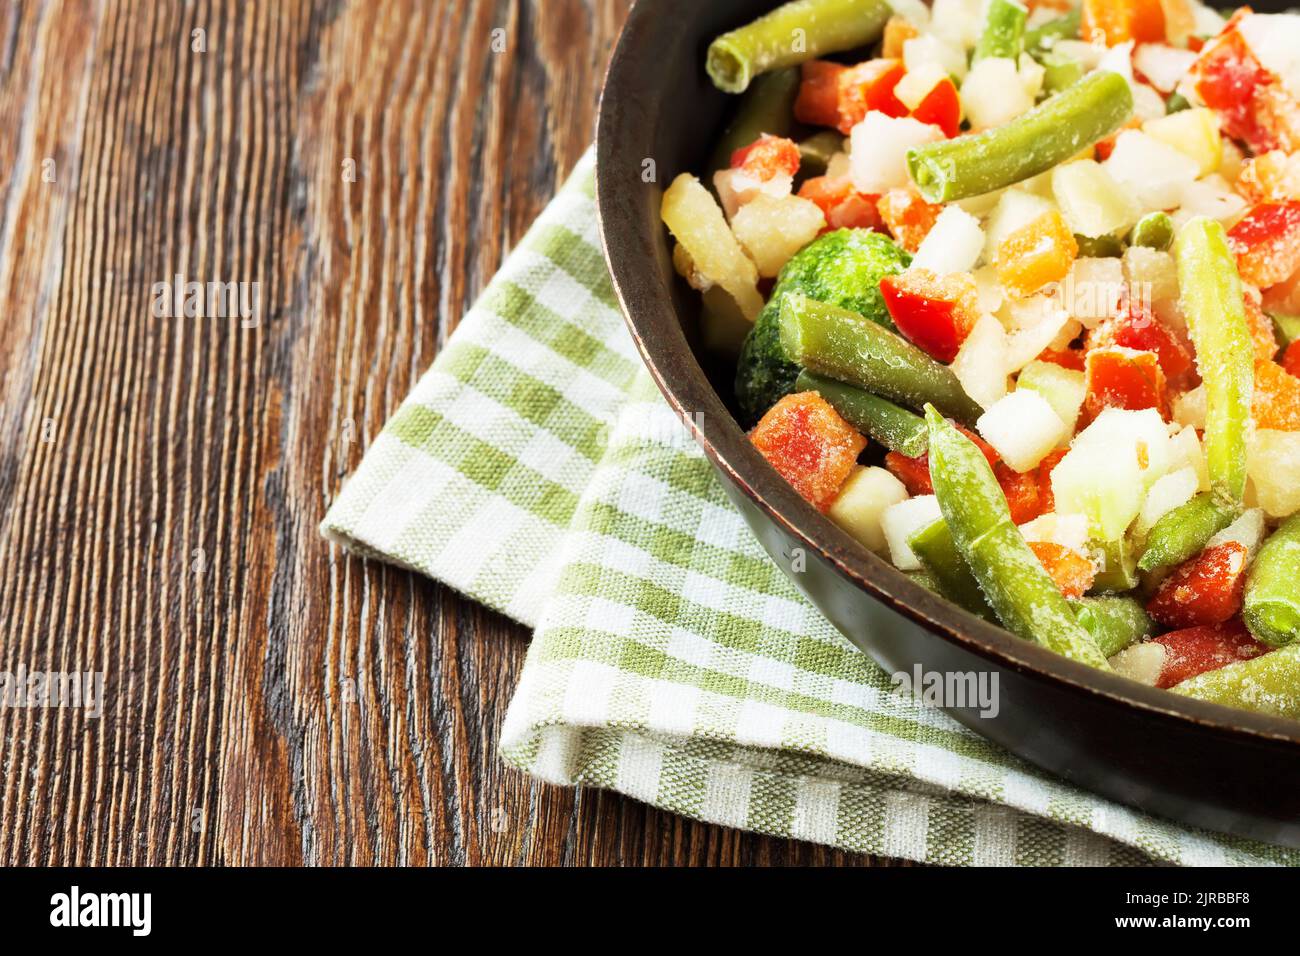 verduras frescas de todo tipo, alimentos totalmente saludables listas para  cocinar Stock Photo